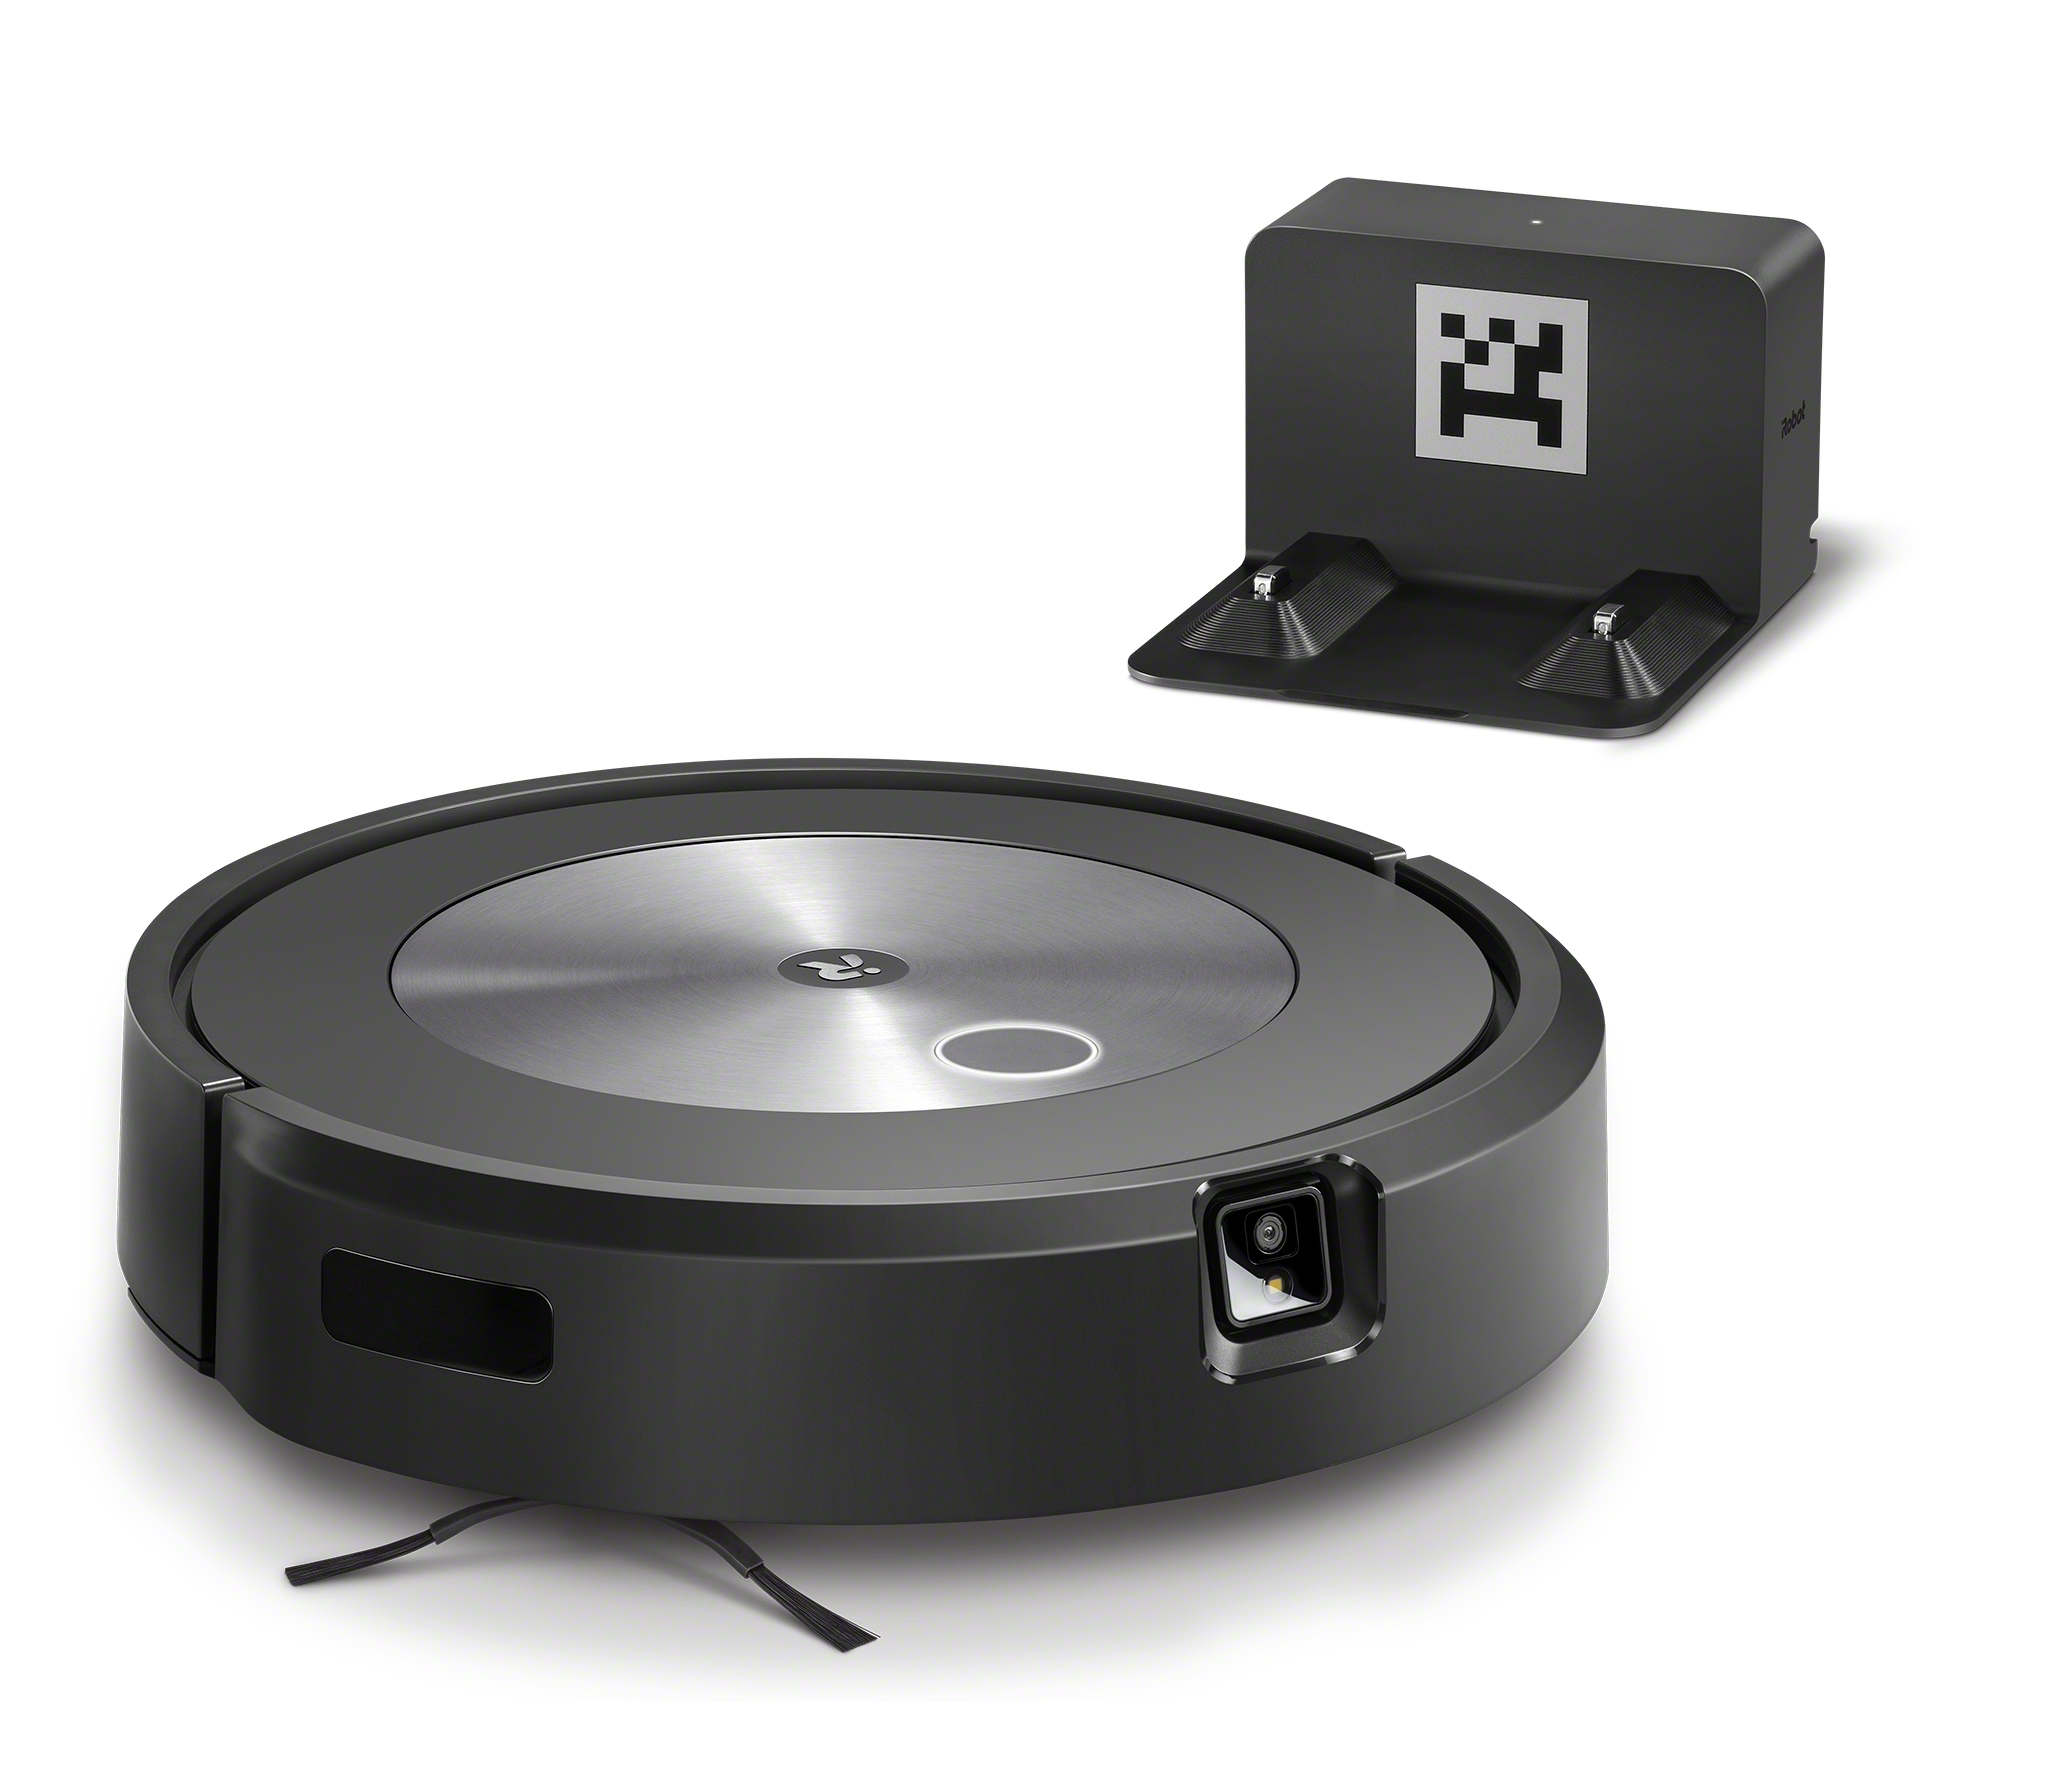 Robot Aspiradora iRobot Roomba j7 con conexión Wi-Fi – iRobot Mexico